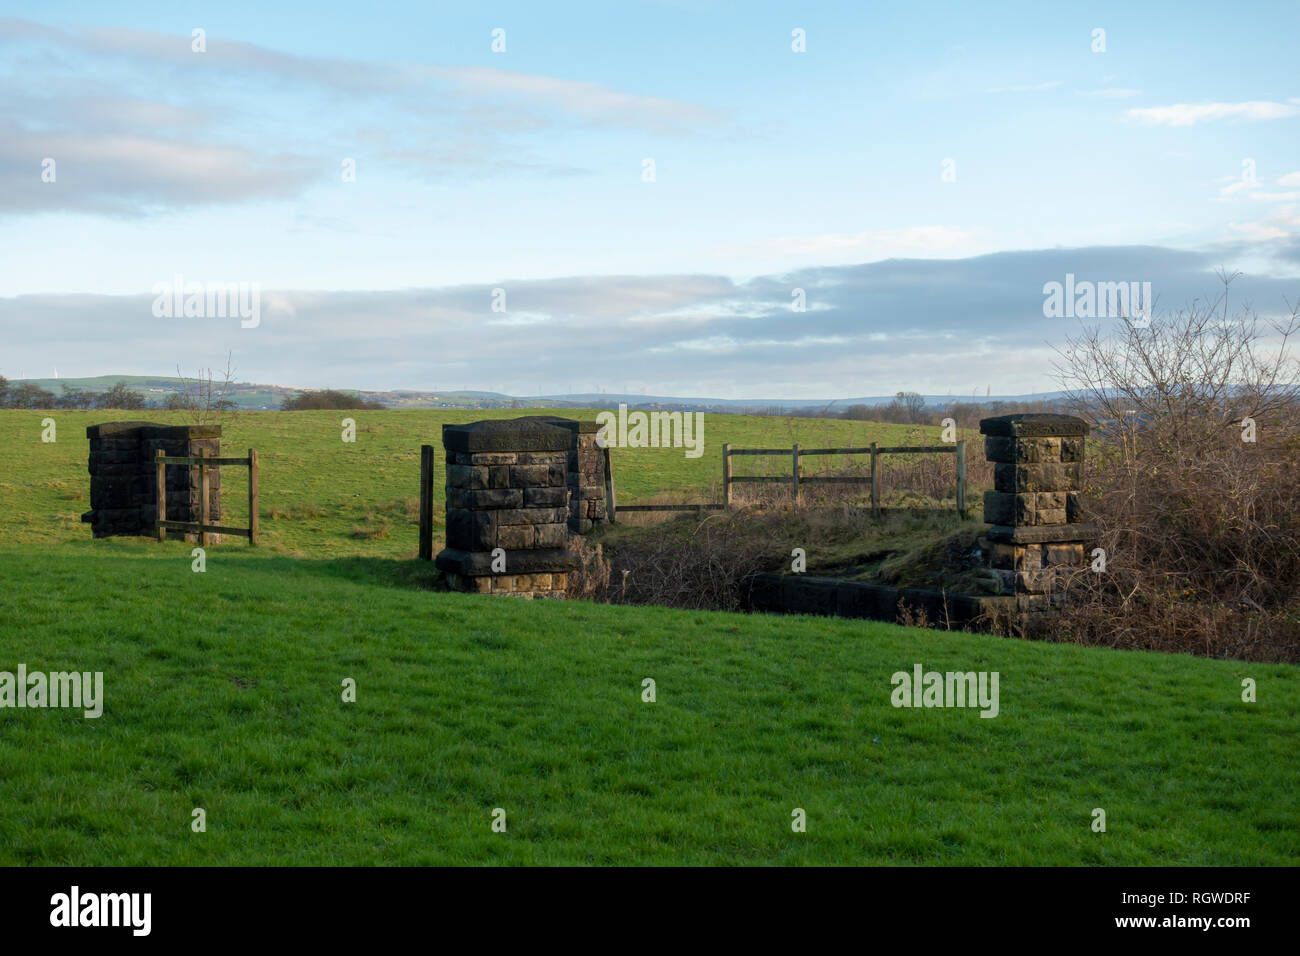 Greenbelt Land in Bury, Mittel für Wohnungsbau. Stockfoto